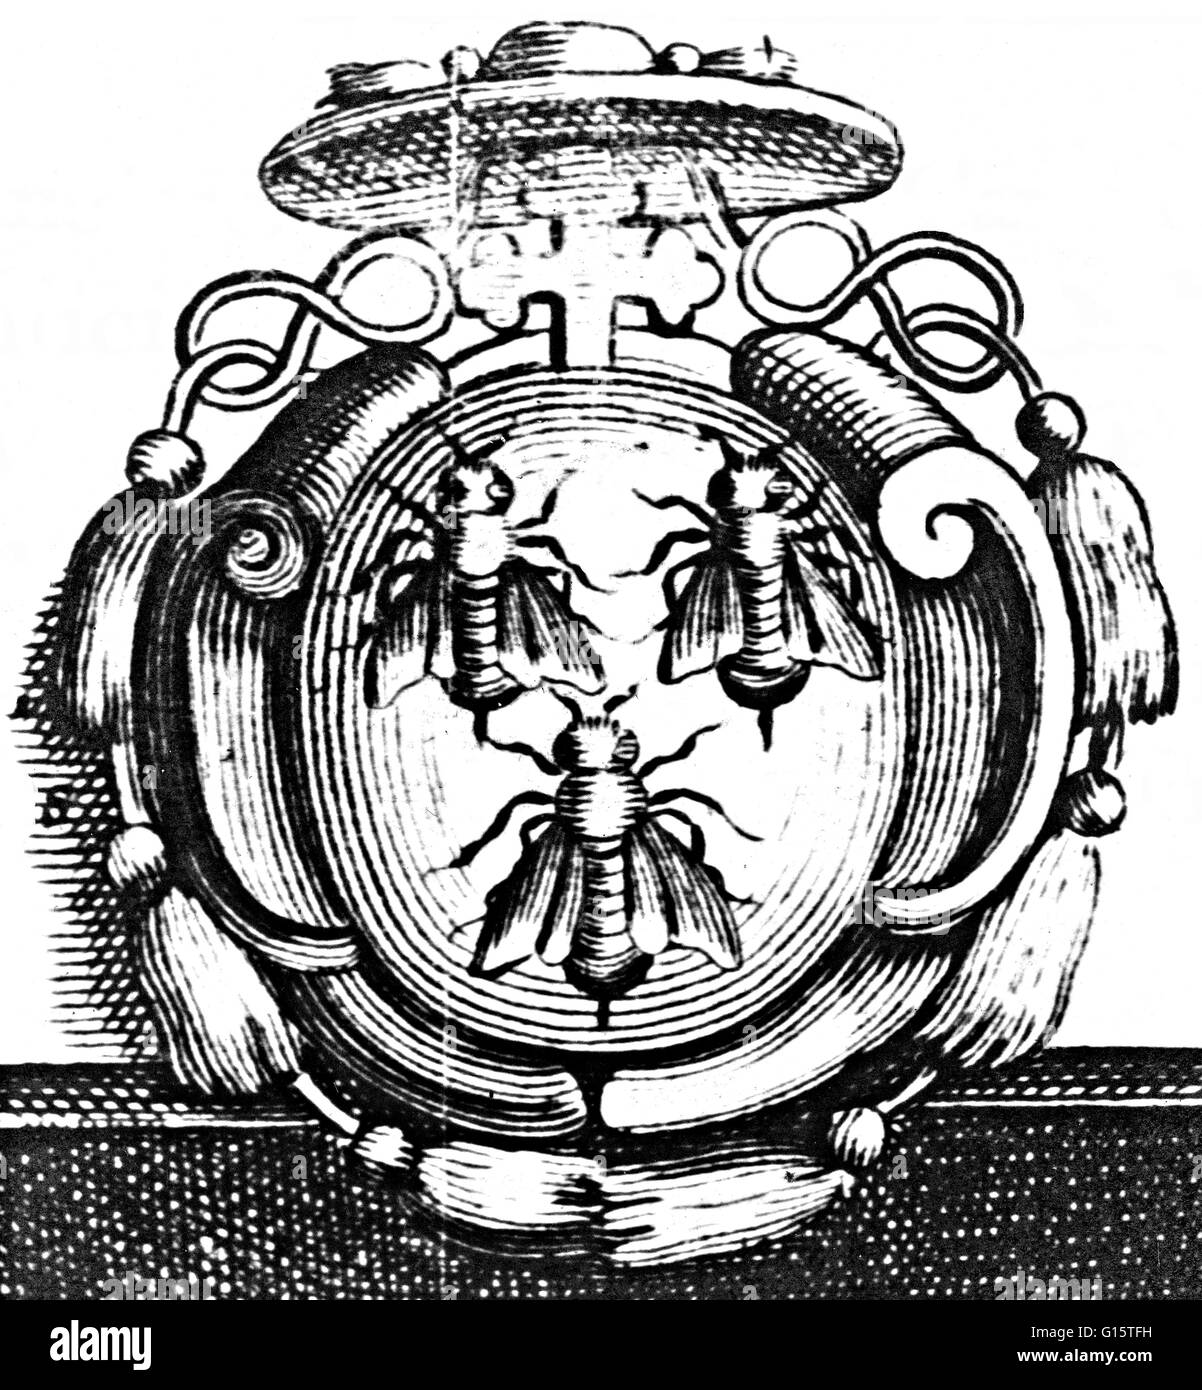 Wappen (drei Bienen) für Francesco Barberini ein italienischer Kardinal. Kirchliche Heraldik ist die Tradition der Heraldik von christlichen Klerus entwickelt. Zunächst verwendet, um Dokumente zu kennzeichnen, entwickelte sich kirchliche Heraldik als ein System zur Identifikation Stockfoto